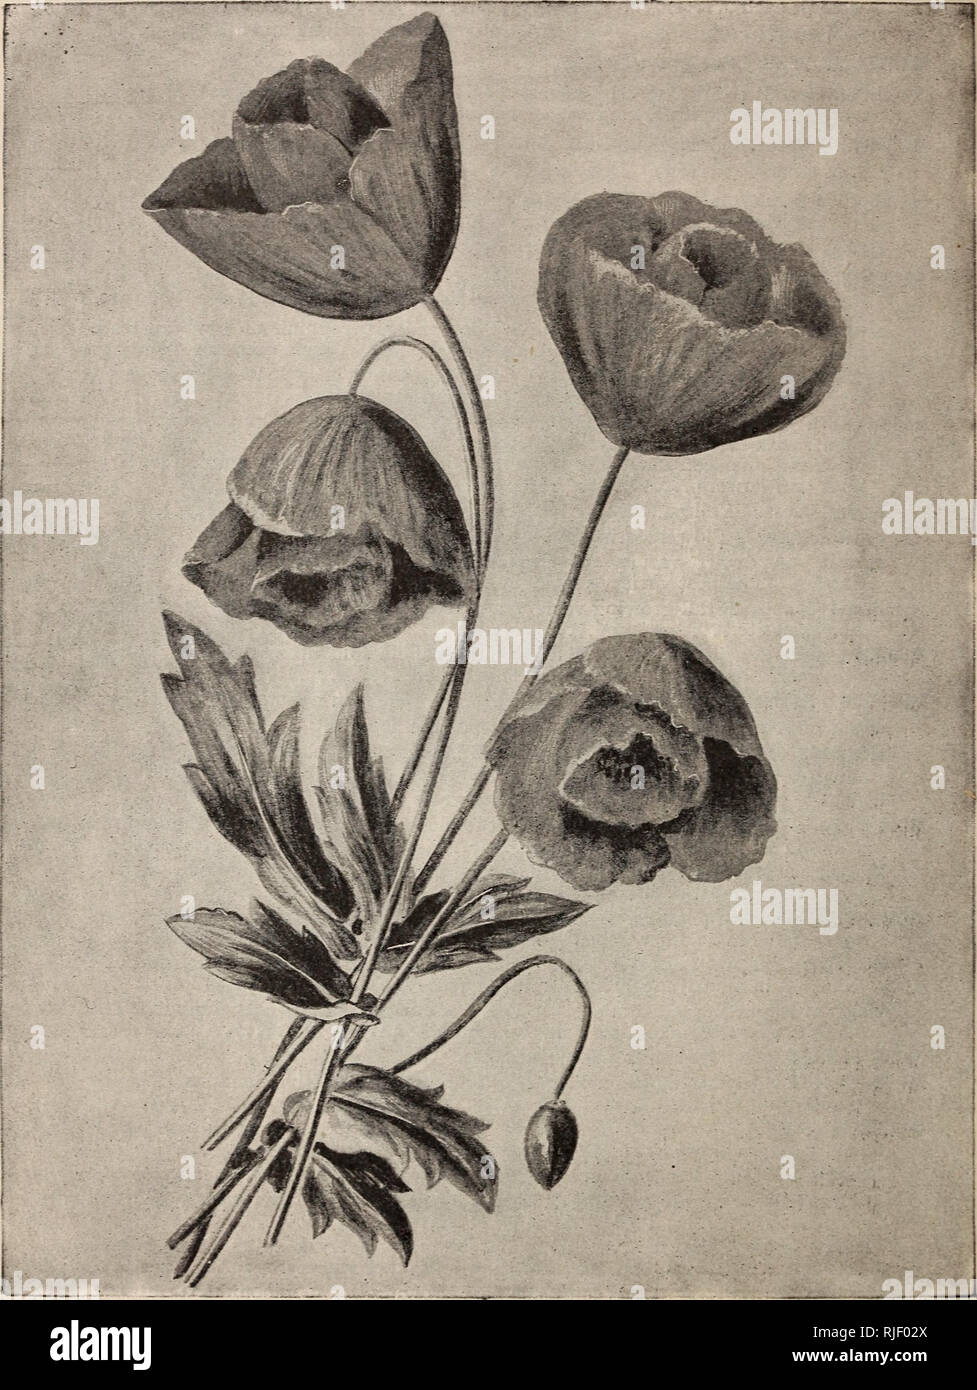 . Catálogo de vegetales y semillas y bulbos de flores para la siembra en la primavera de 1894. Los catálogos de semillas de hortalizas, flores de catálogos de semillas; las bombillas (Plantas) Catálogos; Plantas ornamentales, catálogos de equipos y suministros de jardinería; catálogos; catálogos comerciales de Nueva Jersey. Tulip amapola. (Papaver glaucum.) (consulte la página 73). Por favor tenga en cuenta que estas imágenes son extraídas de la página escaneada imágenes que podrían haber sido mejoradas digitalmente para mejorar la legibilidad, la coloración y el aspecto de estas ilustraciones pueden no parecerse perfectamente a la obra original. La lanzadora &Amp; Manda; Pitcher, James R; Manda, W. Un; Estados Unidos Nurseri Foto de stock